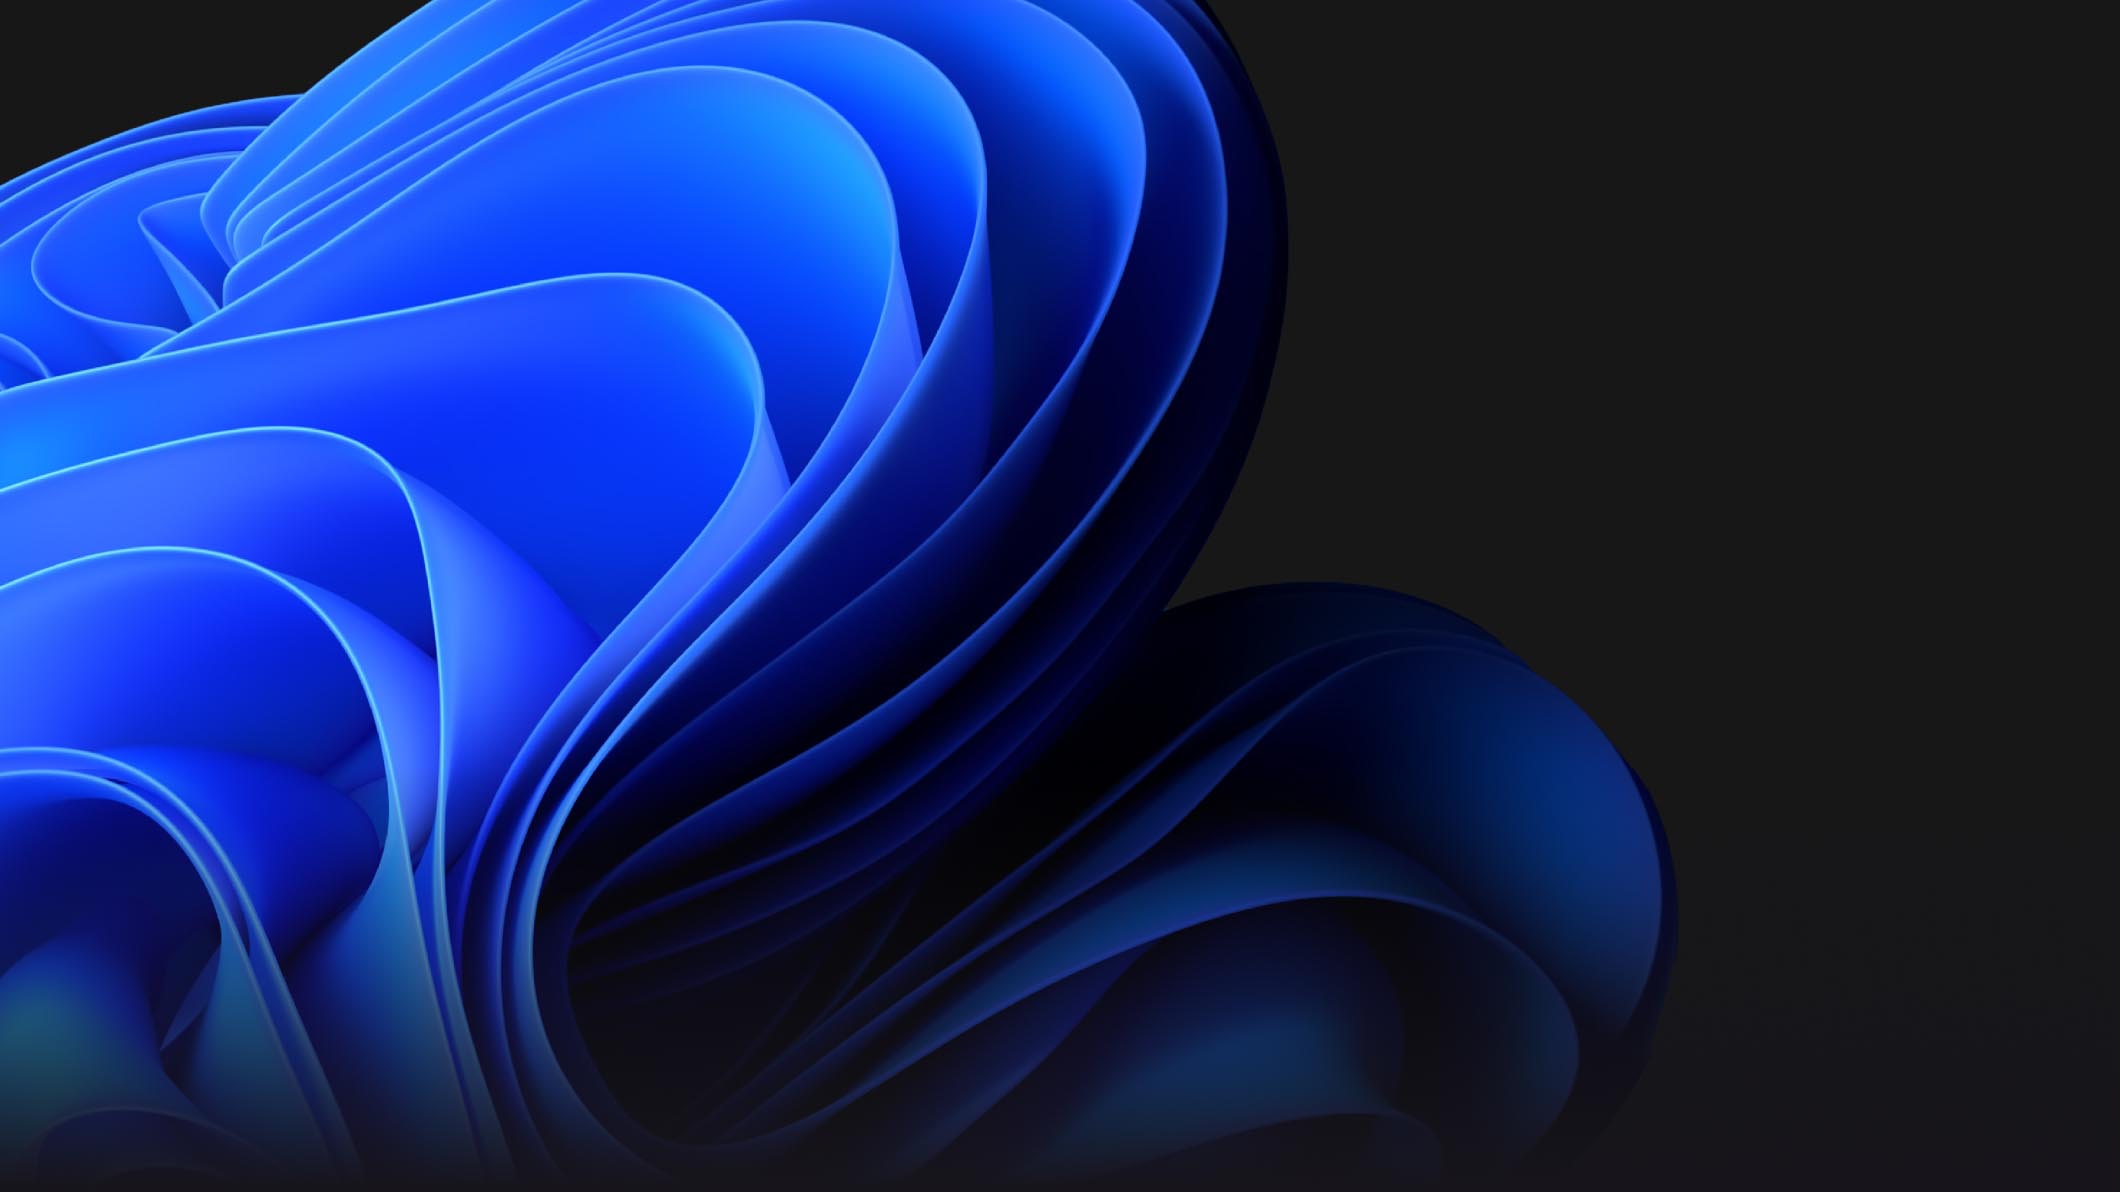 Eine abstrakte blaue Form mit mehreren Schichten vor einem schwarzen Hintergrund